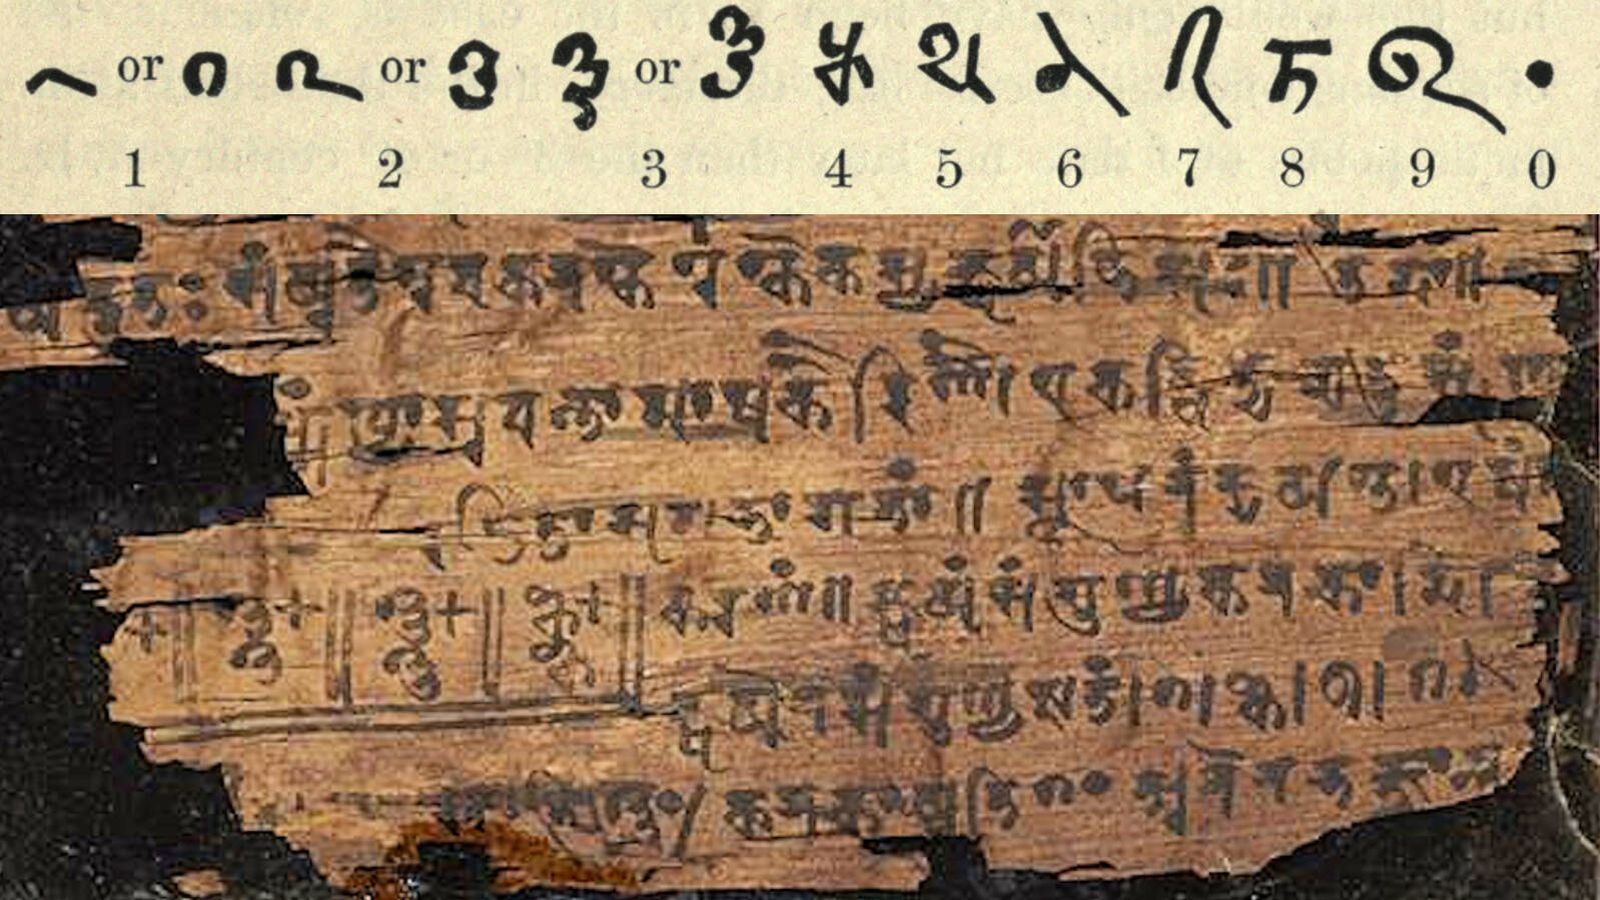 El manuscrito Bakhshali es un antiguo texto matemático indio escrito en corteza de abedul que se encontró en 1881 en el pueblo de Bakhshali, Mardan (cerca de Peshawar en el actual Pakistán). Fuente: Wikipedia.